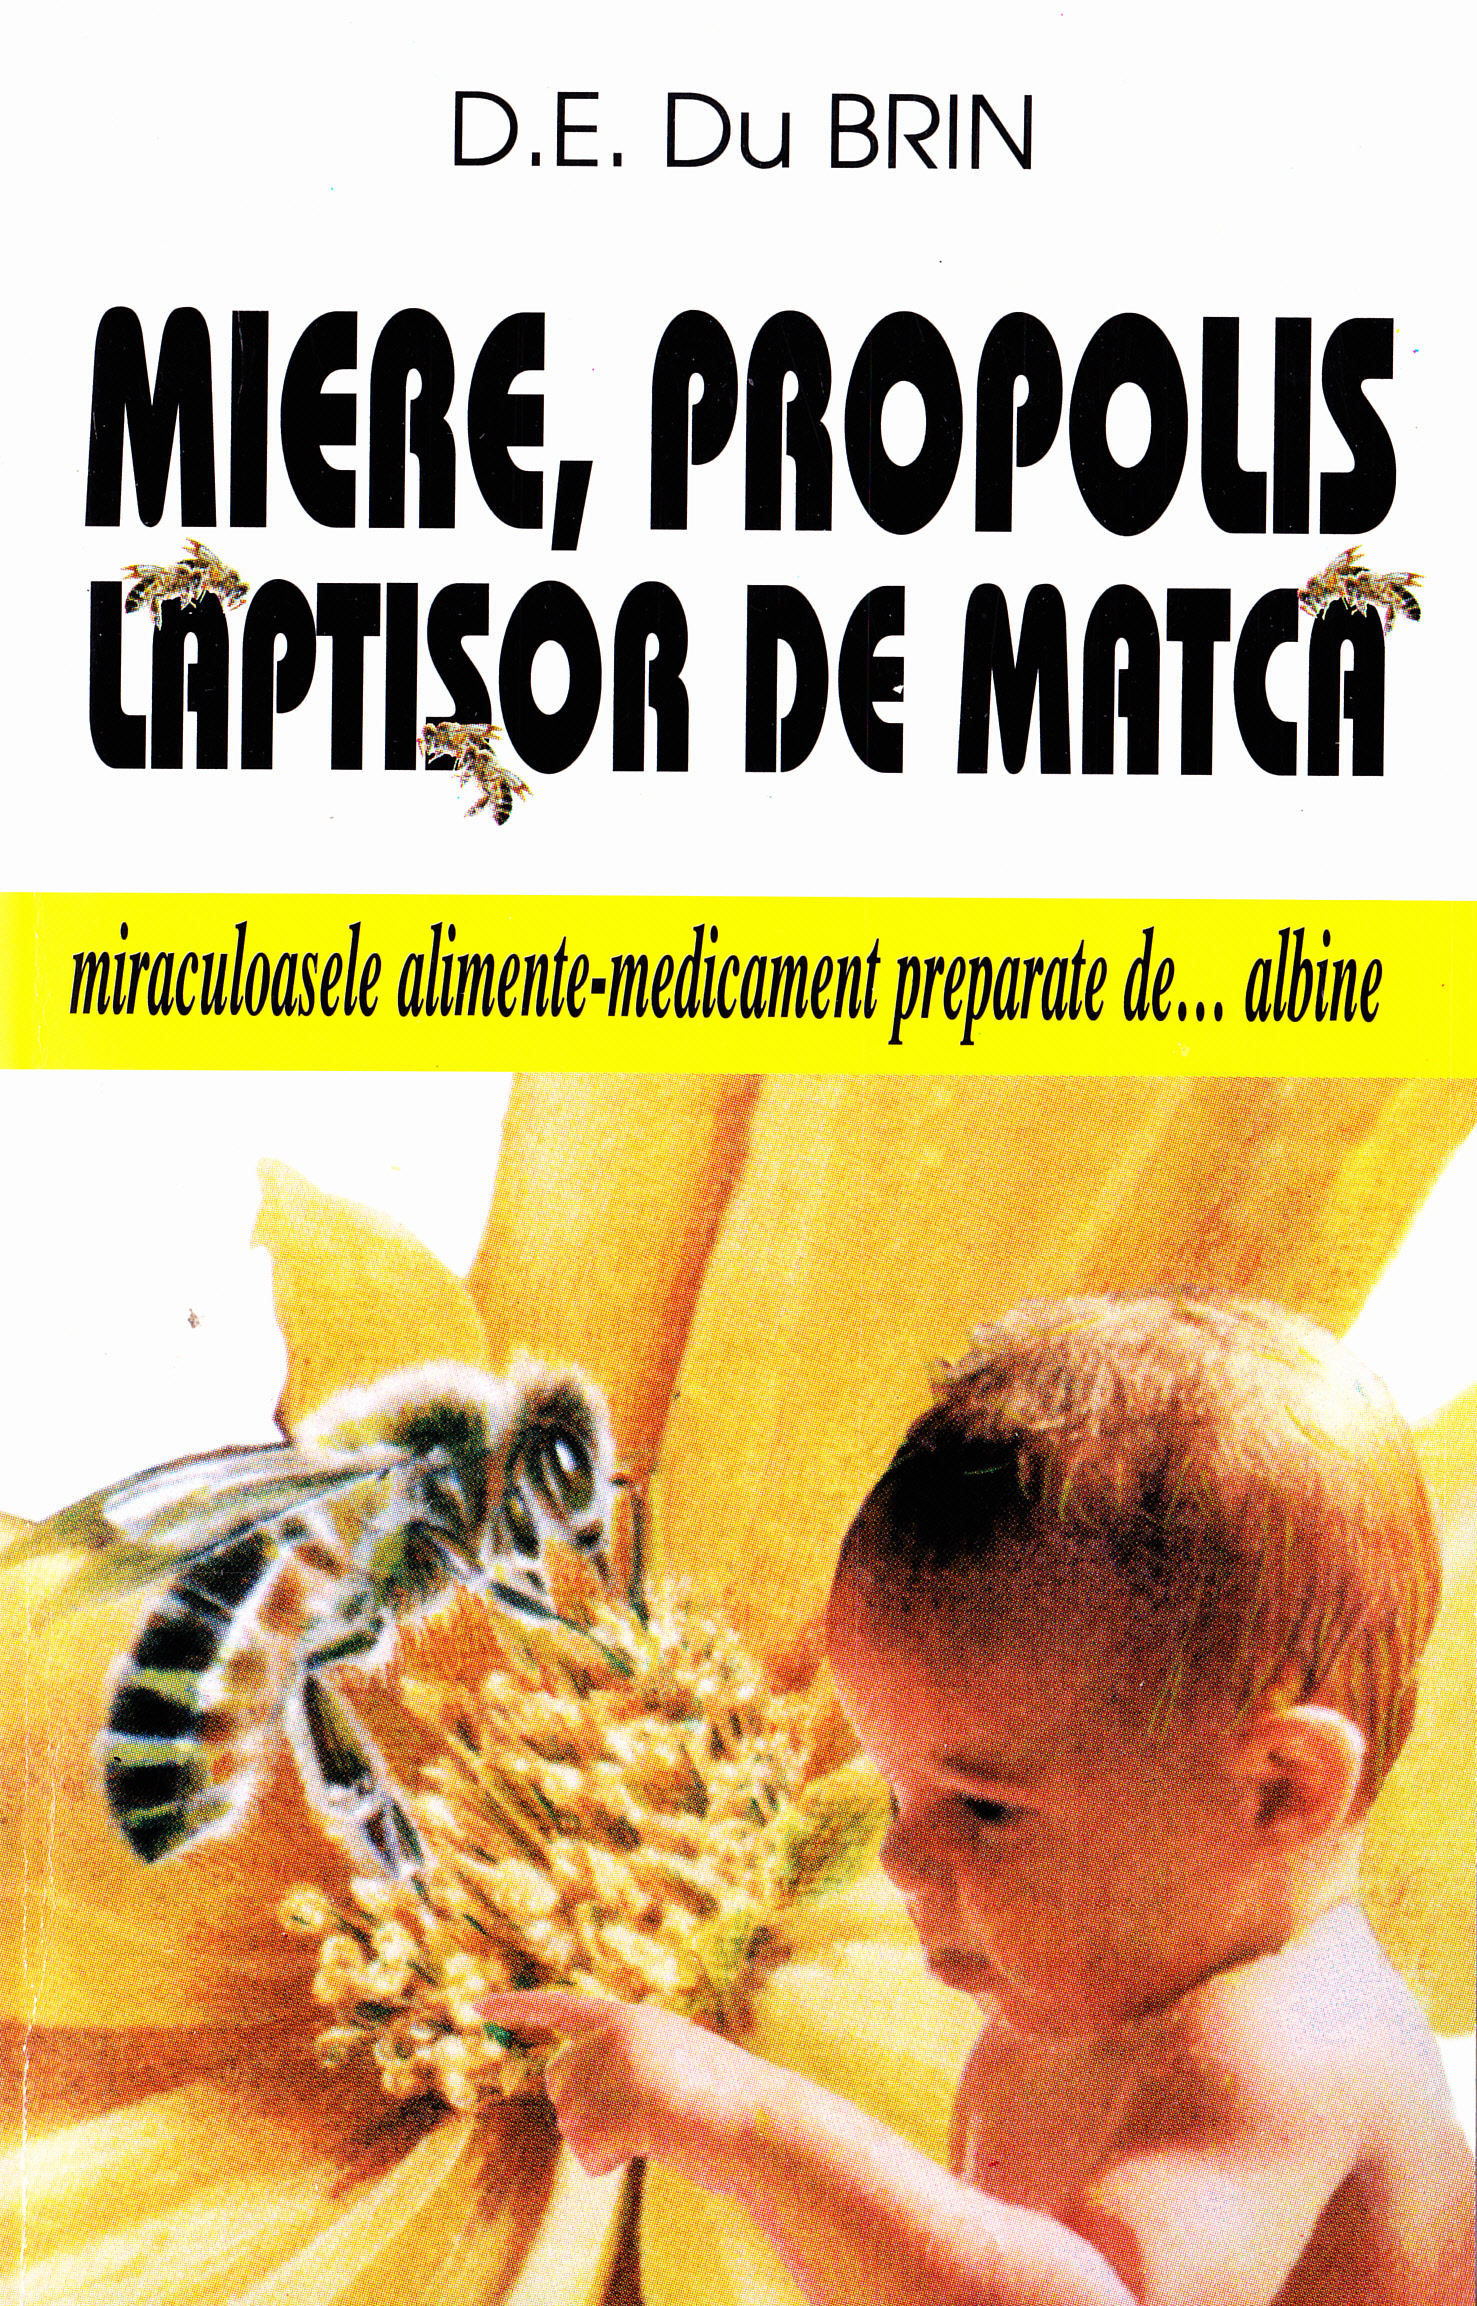 Miere, propolis, laptisor de matca - D.E. Du Brin